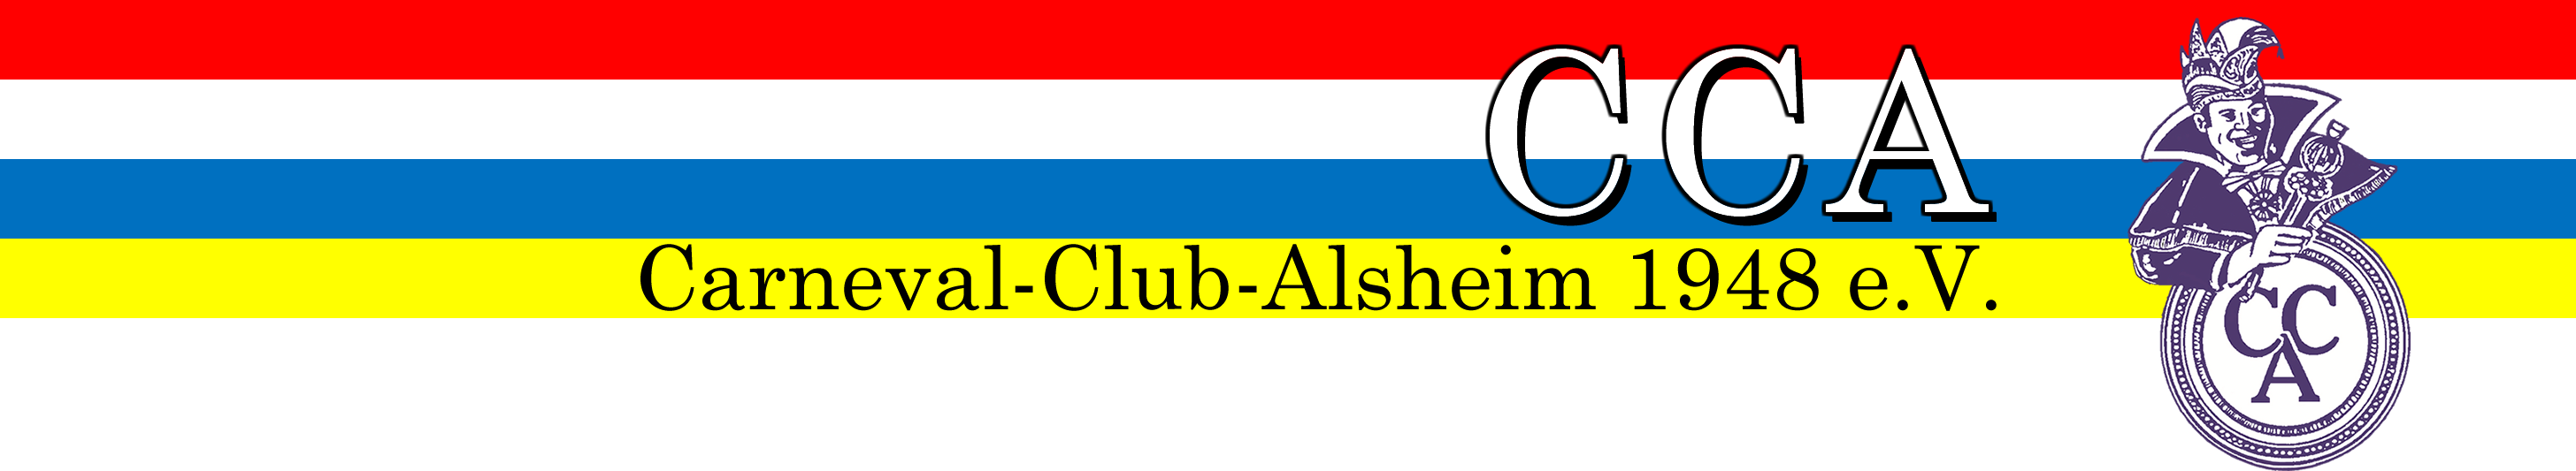 Logo Carneval-Club-Alsheim 1948 e.V.